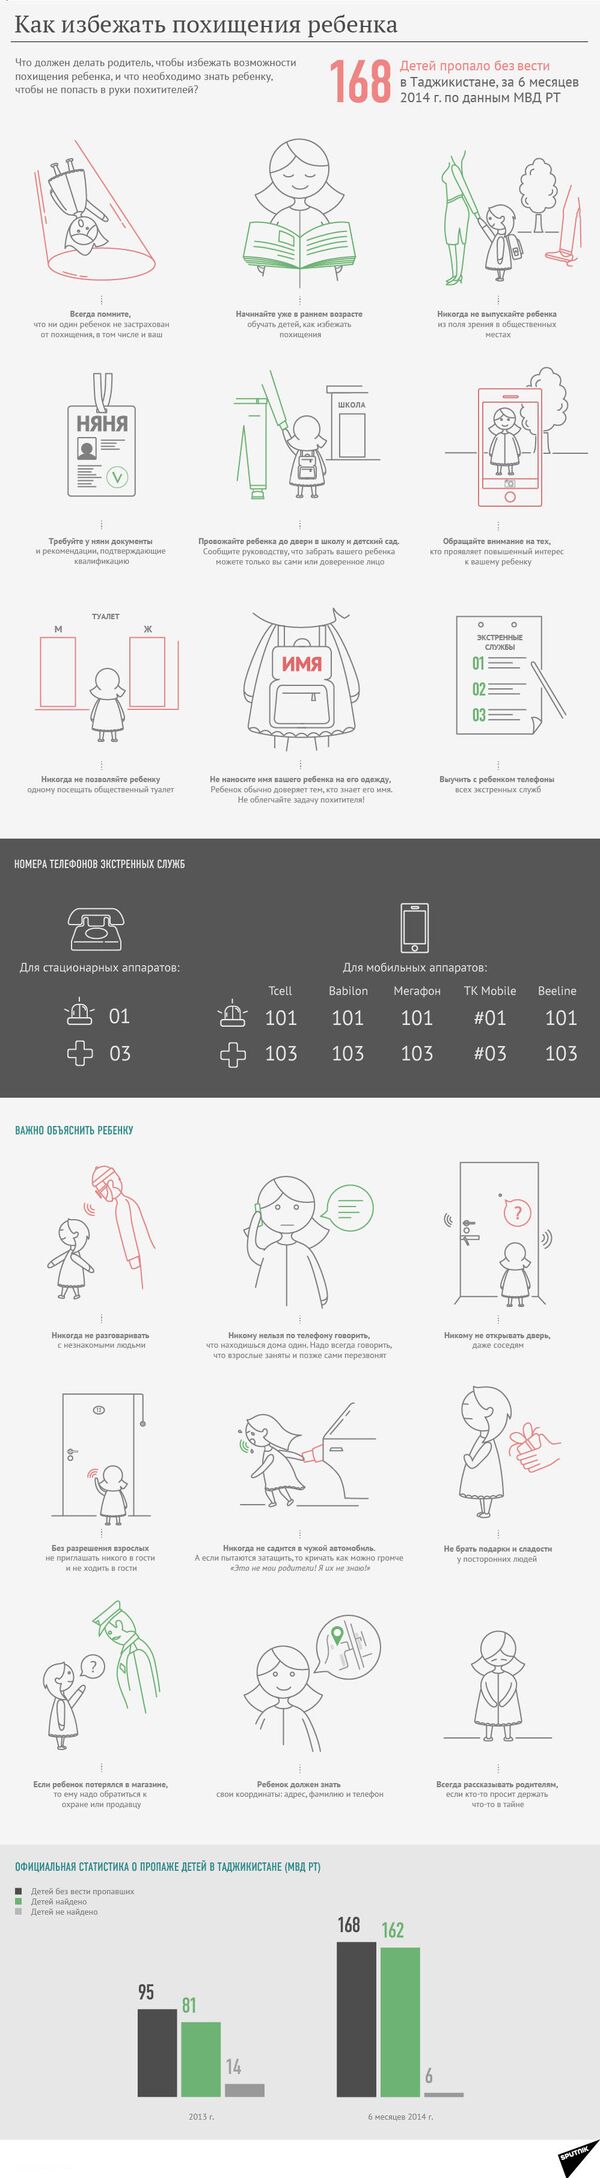 Как избежать похищения ребенка. Инфографика - Sputnik Таджикистан